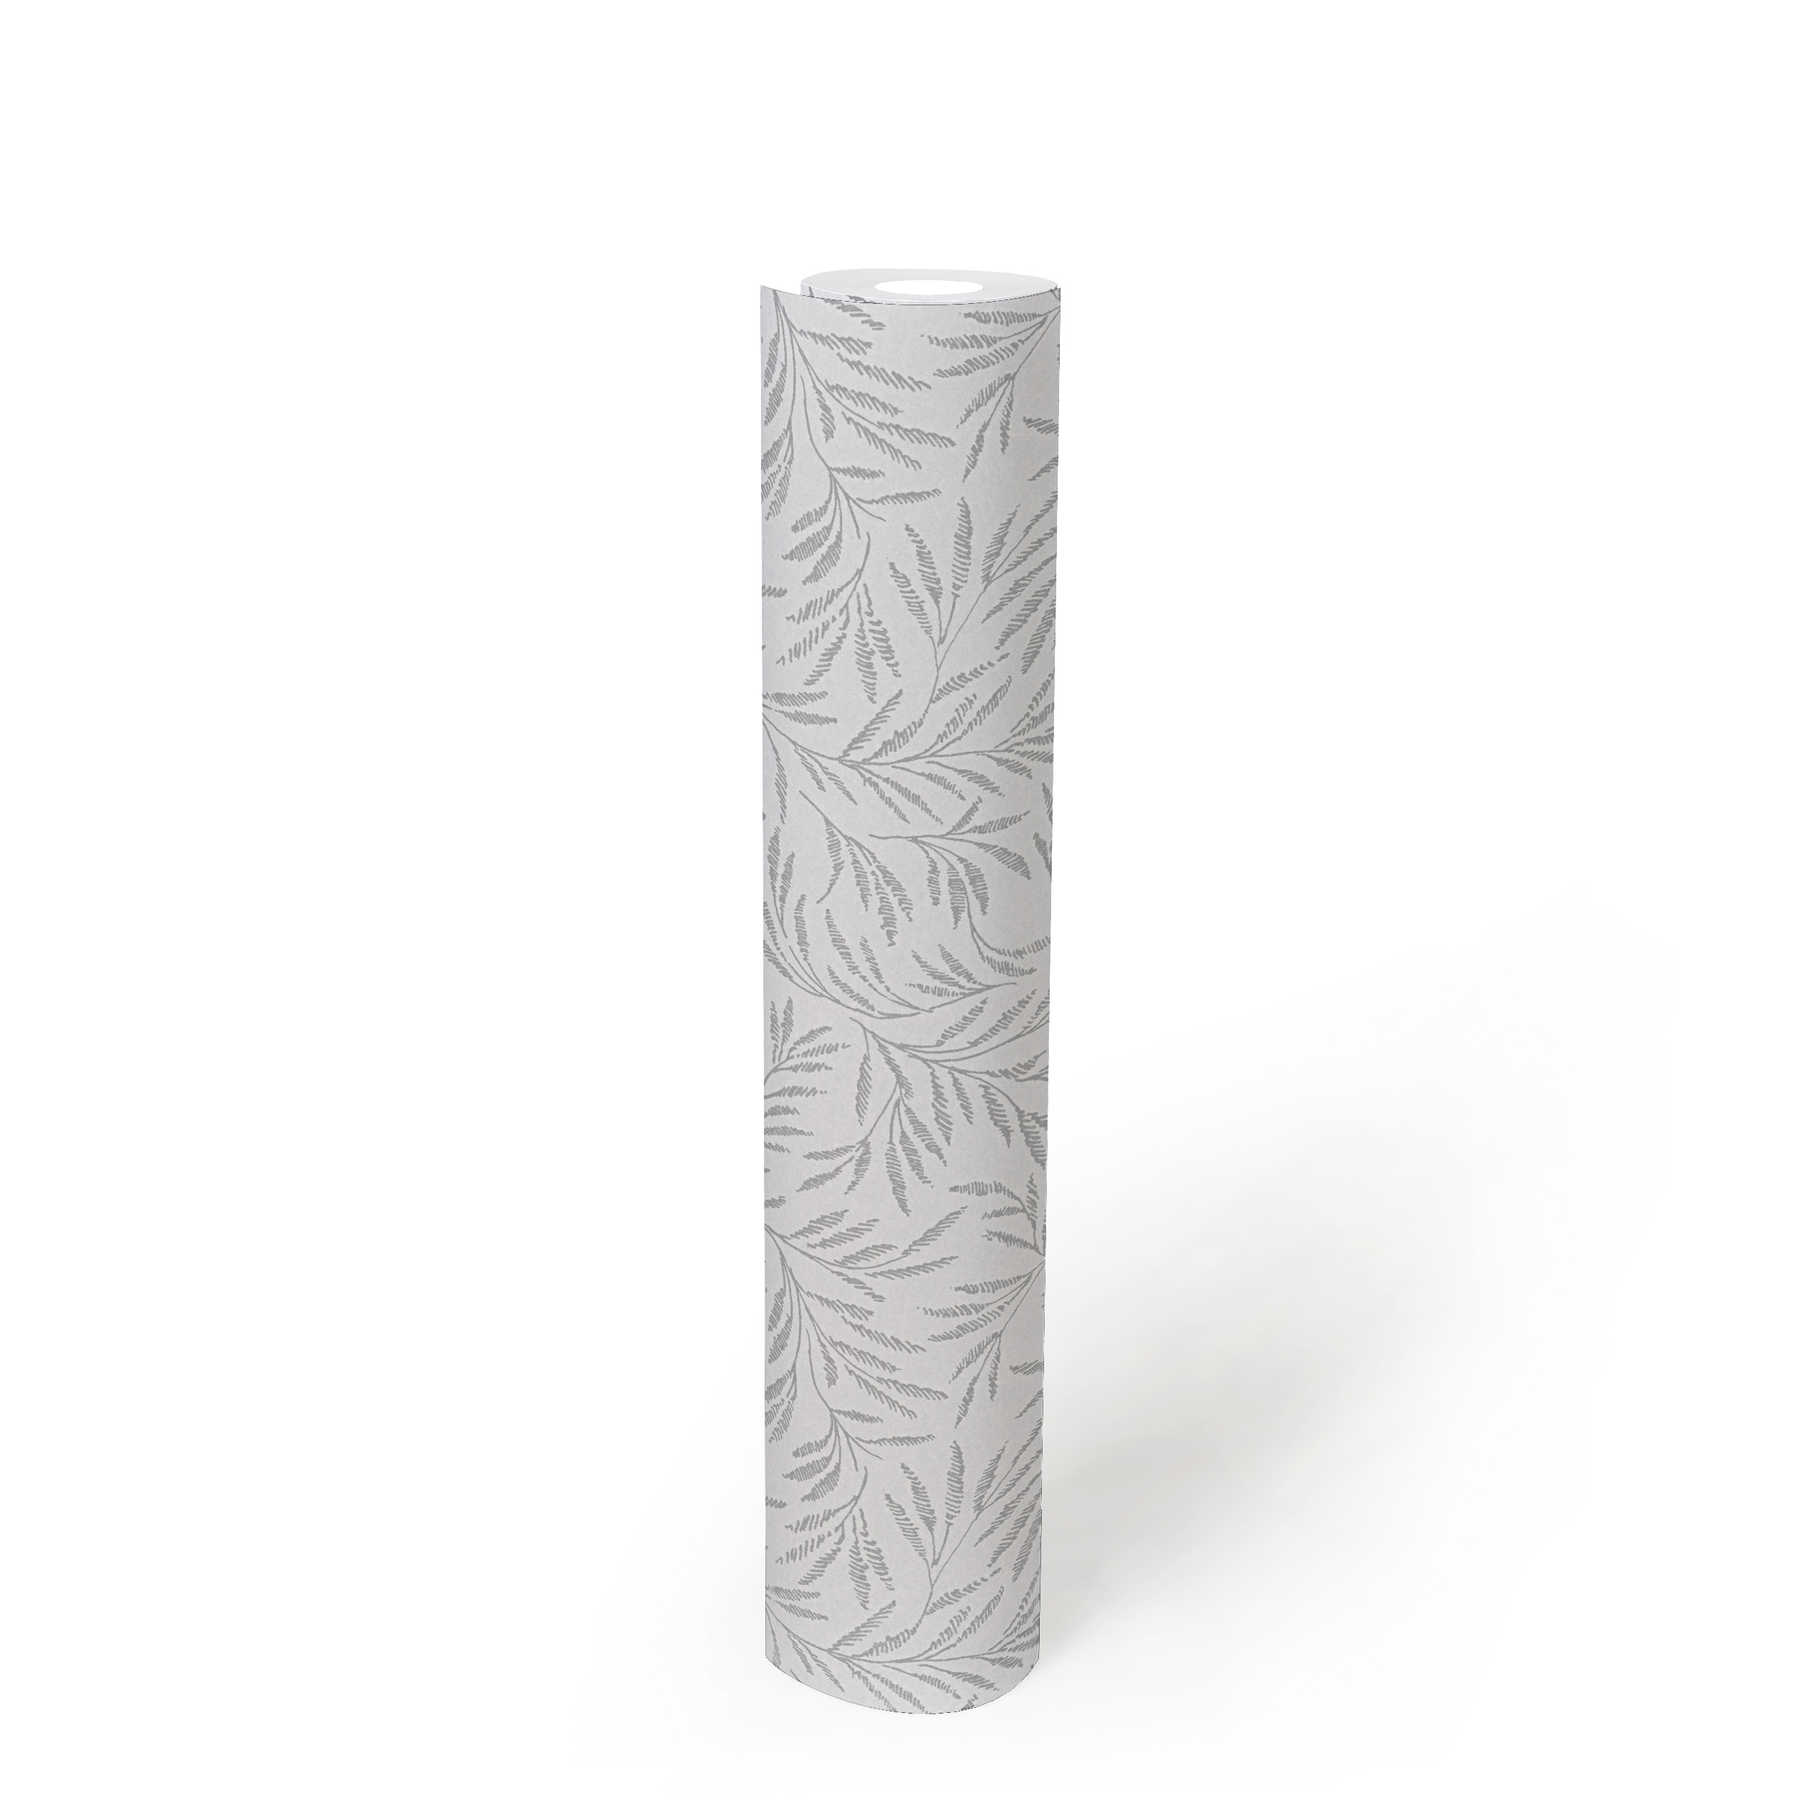             Vliestapete Metallic Muster mit Blätterranken – Grau, Silber
        